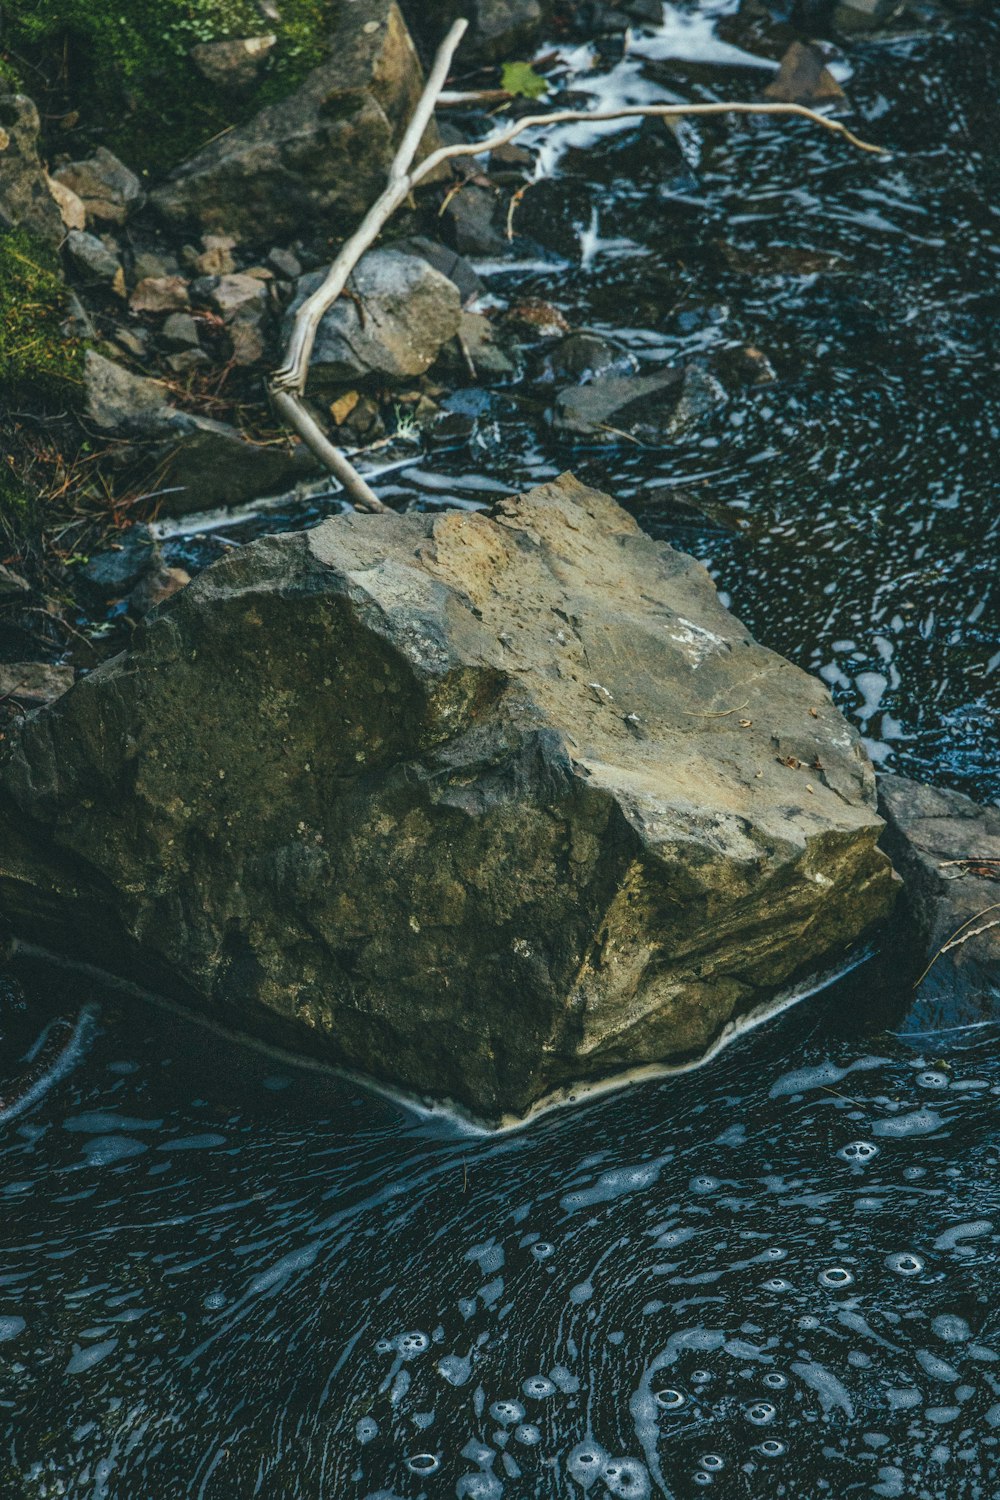 a close up of a rock